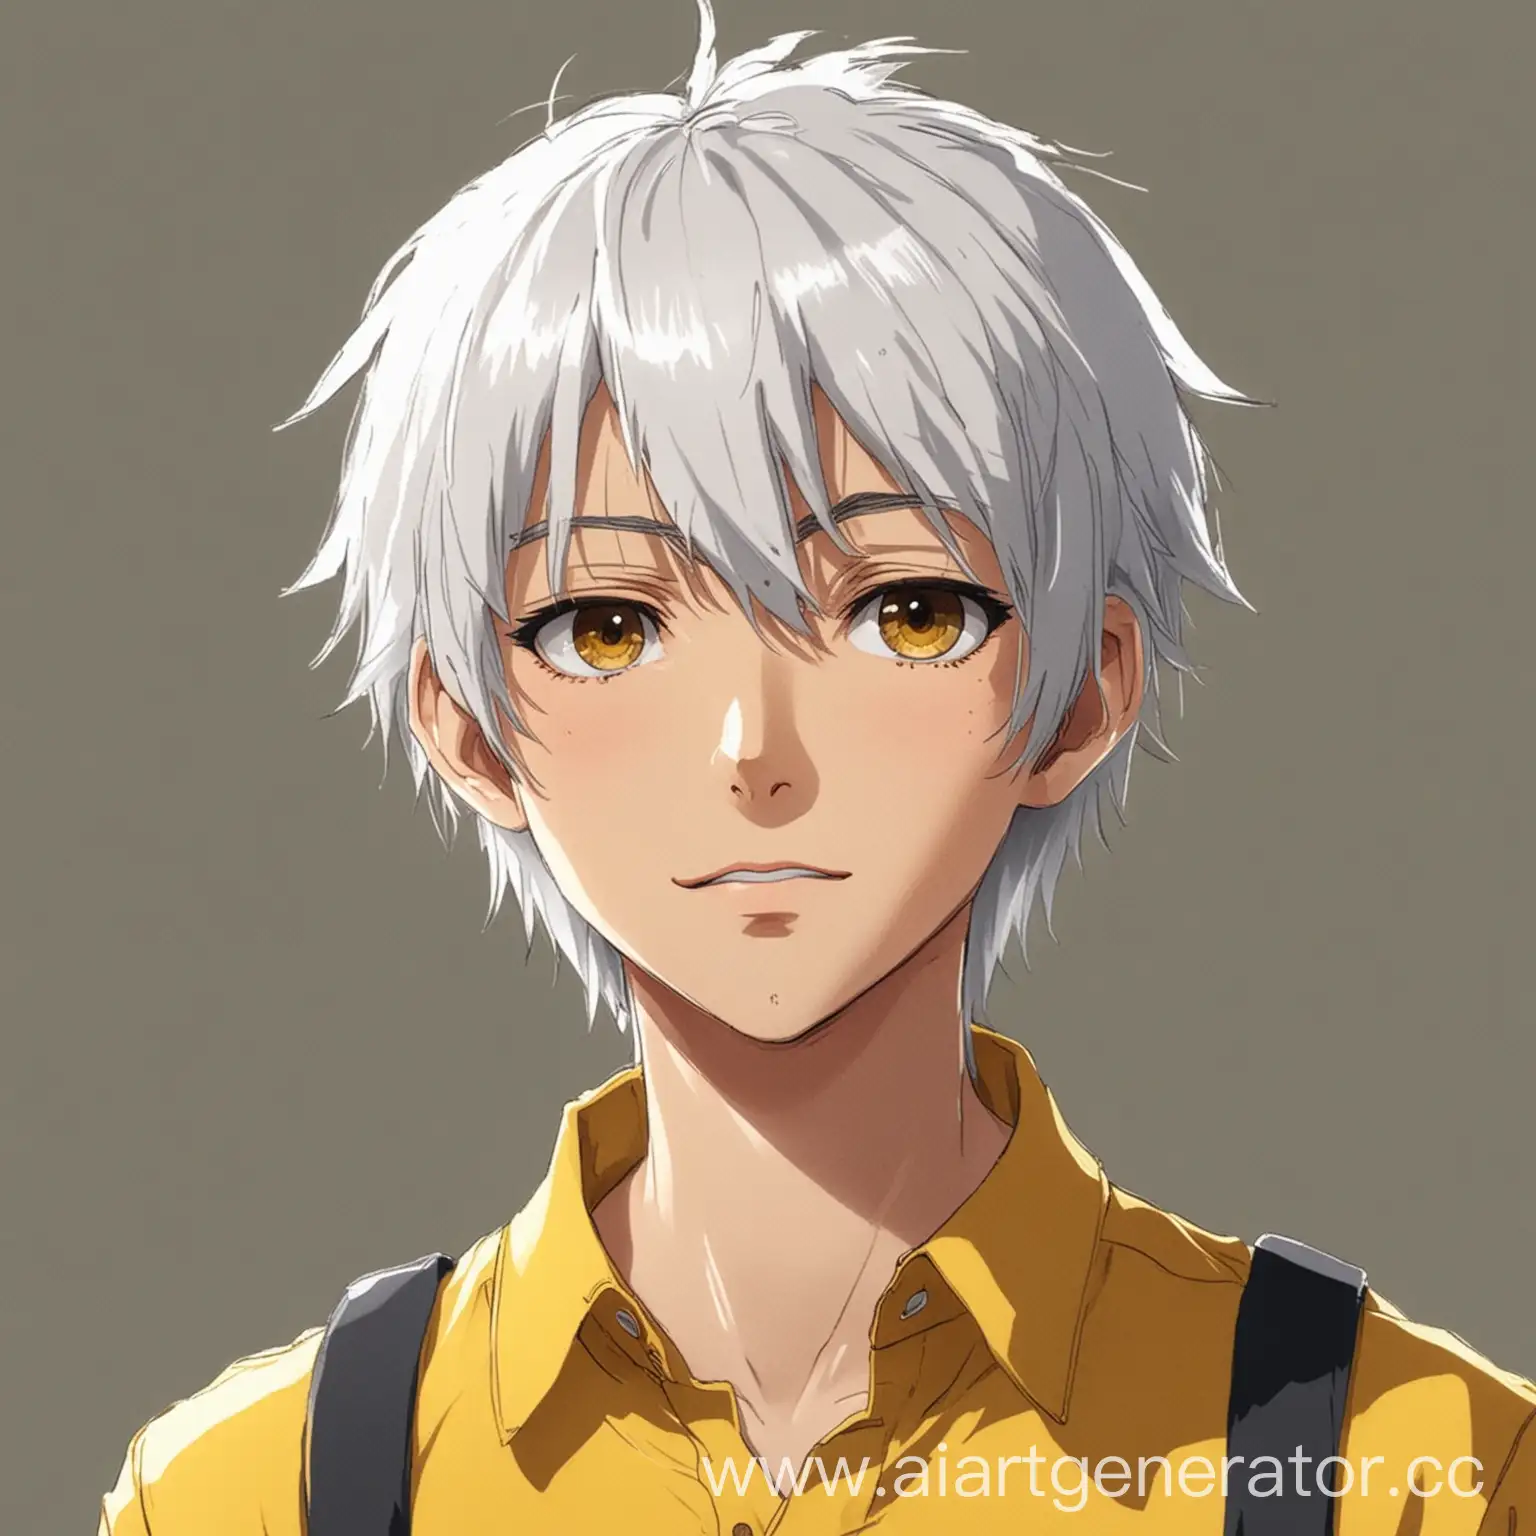 мальчик с белыми волосами в желтой рубашке в аниме